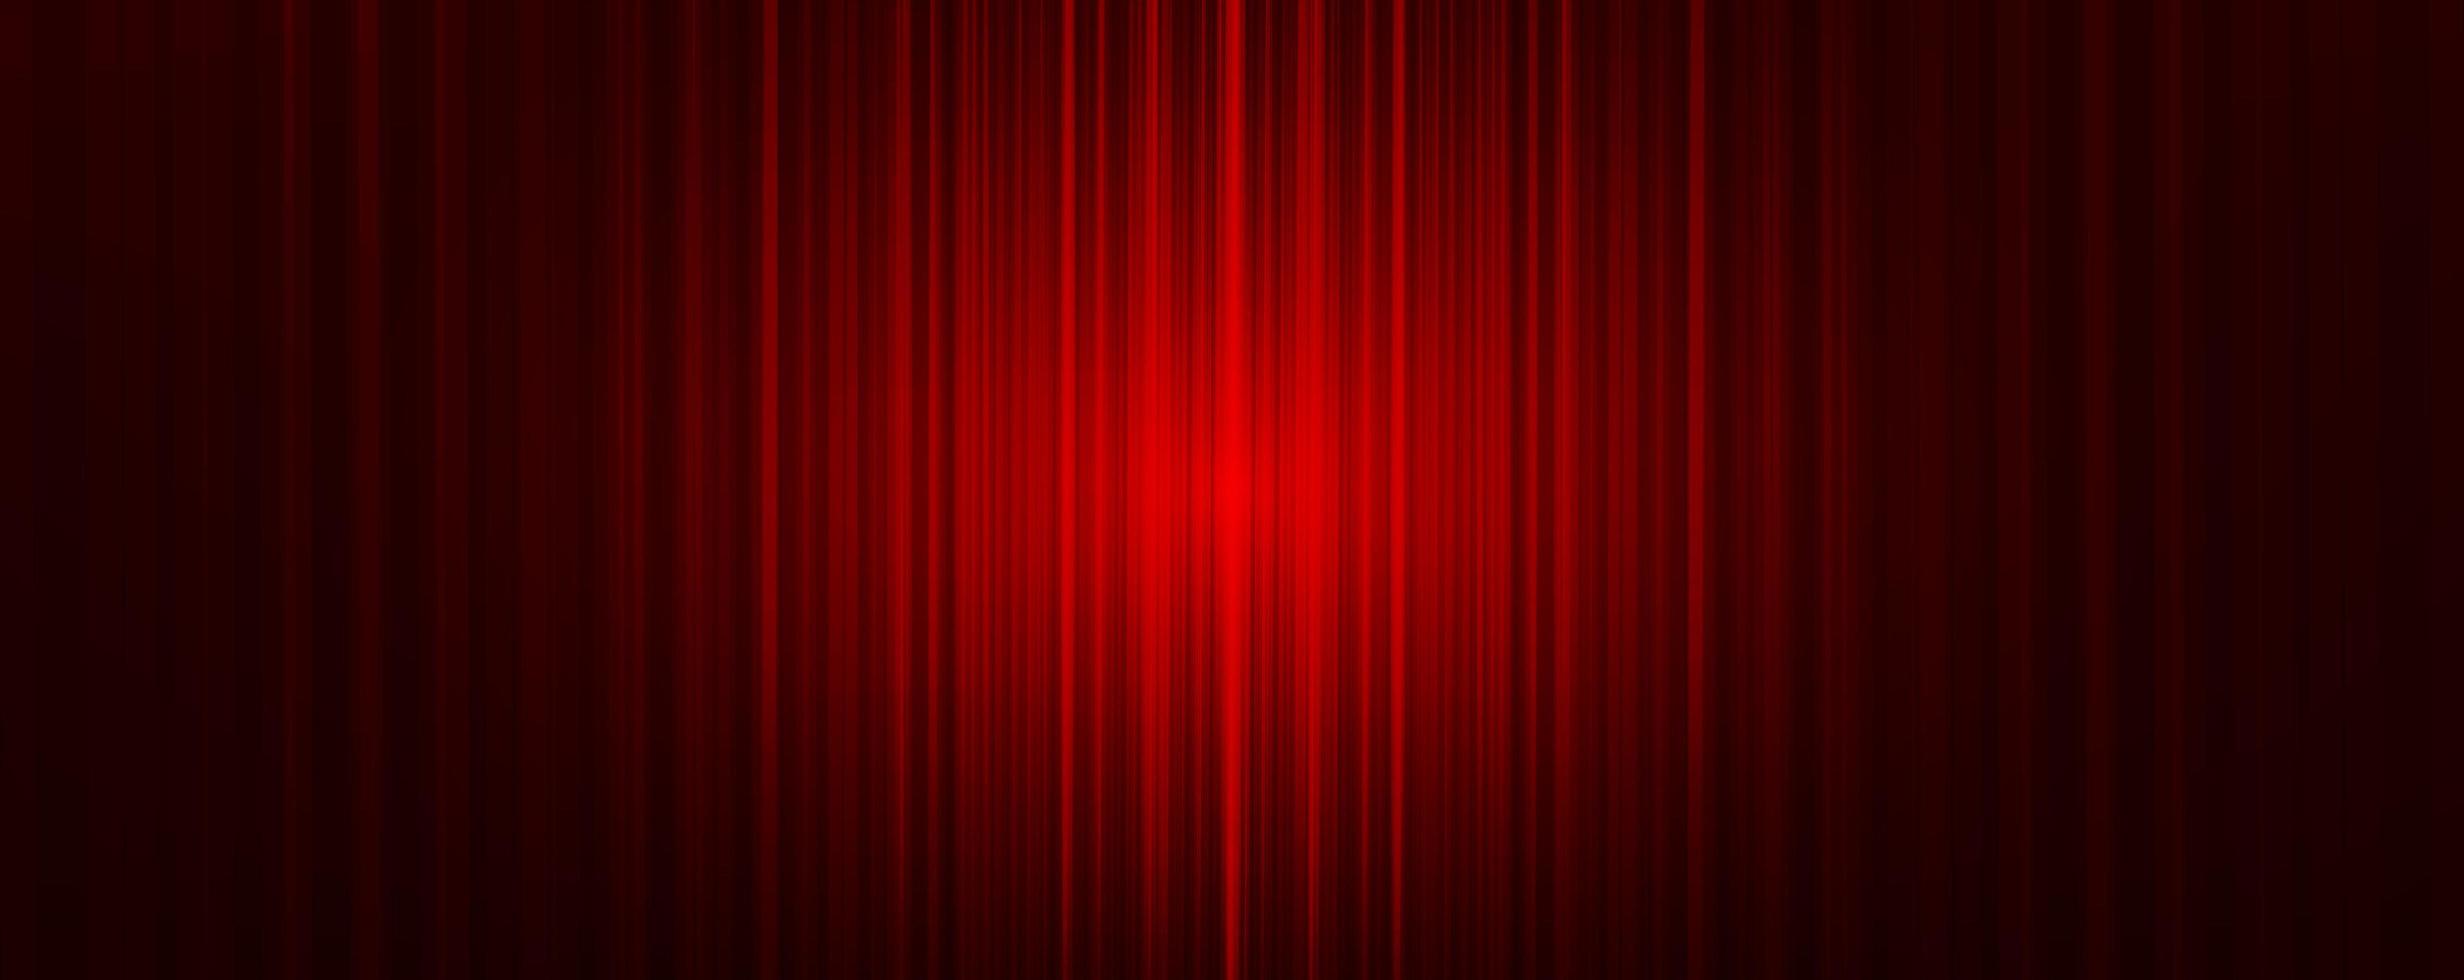 cortina vermelha de vetor com fundo de palco claro, estilo moderno.